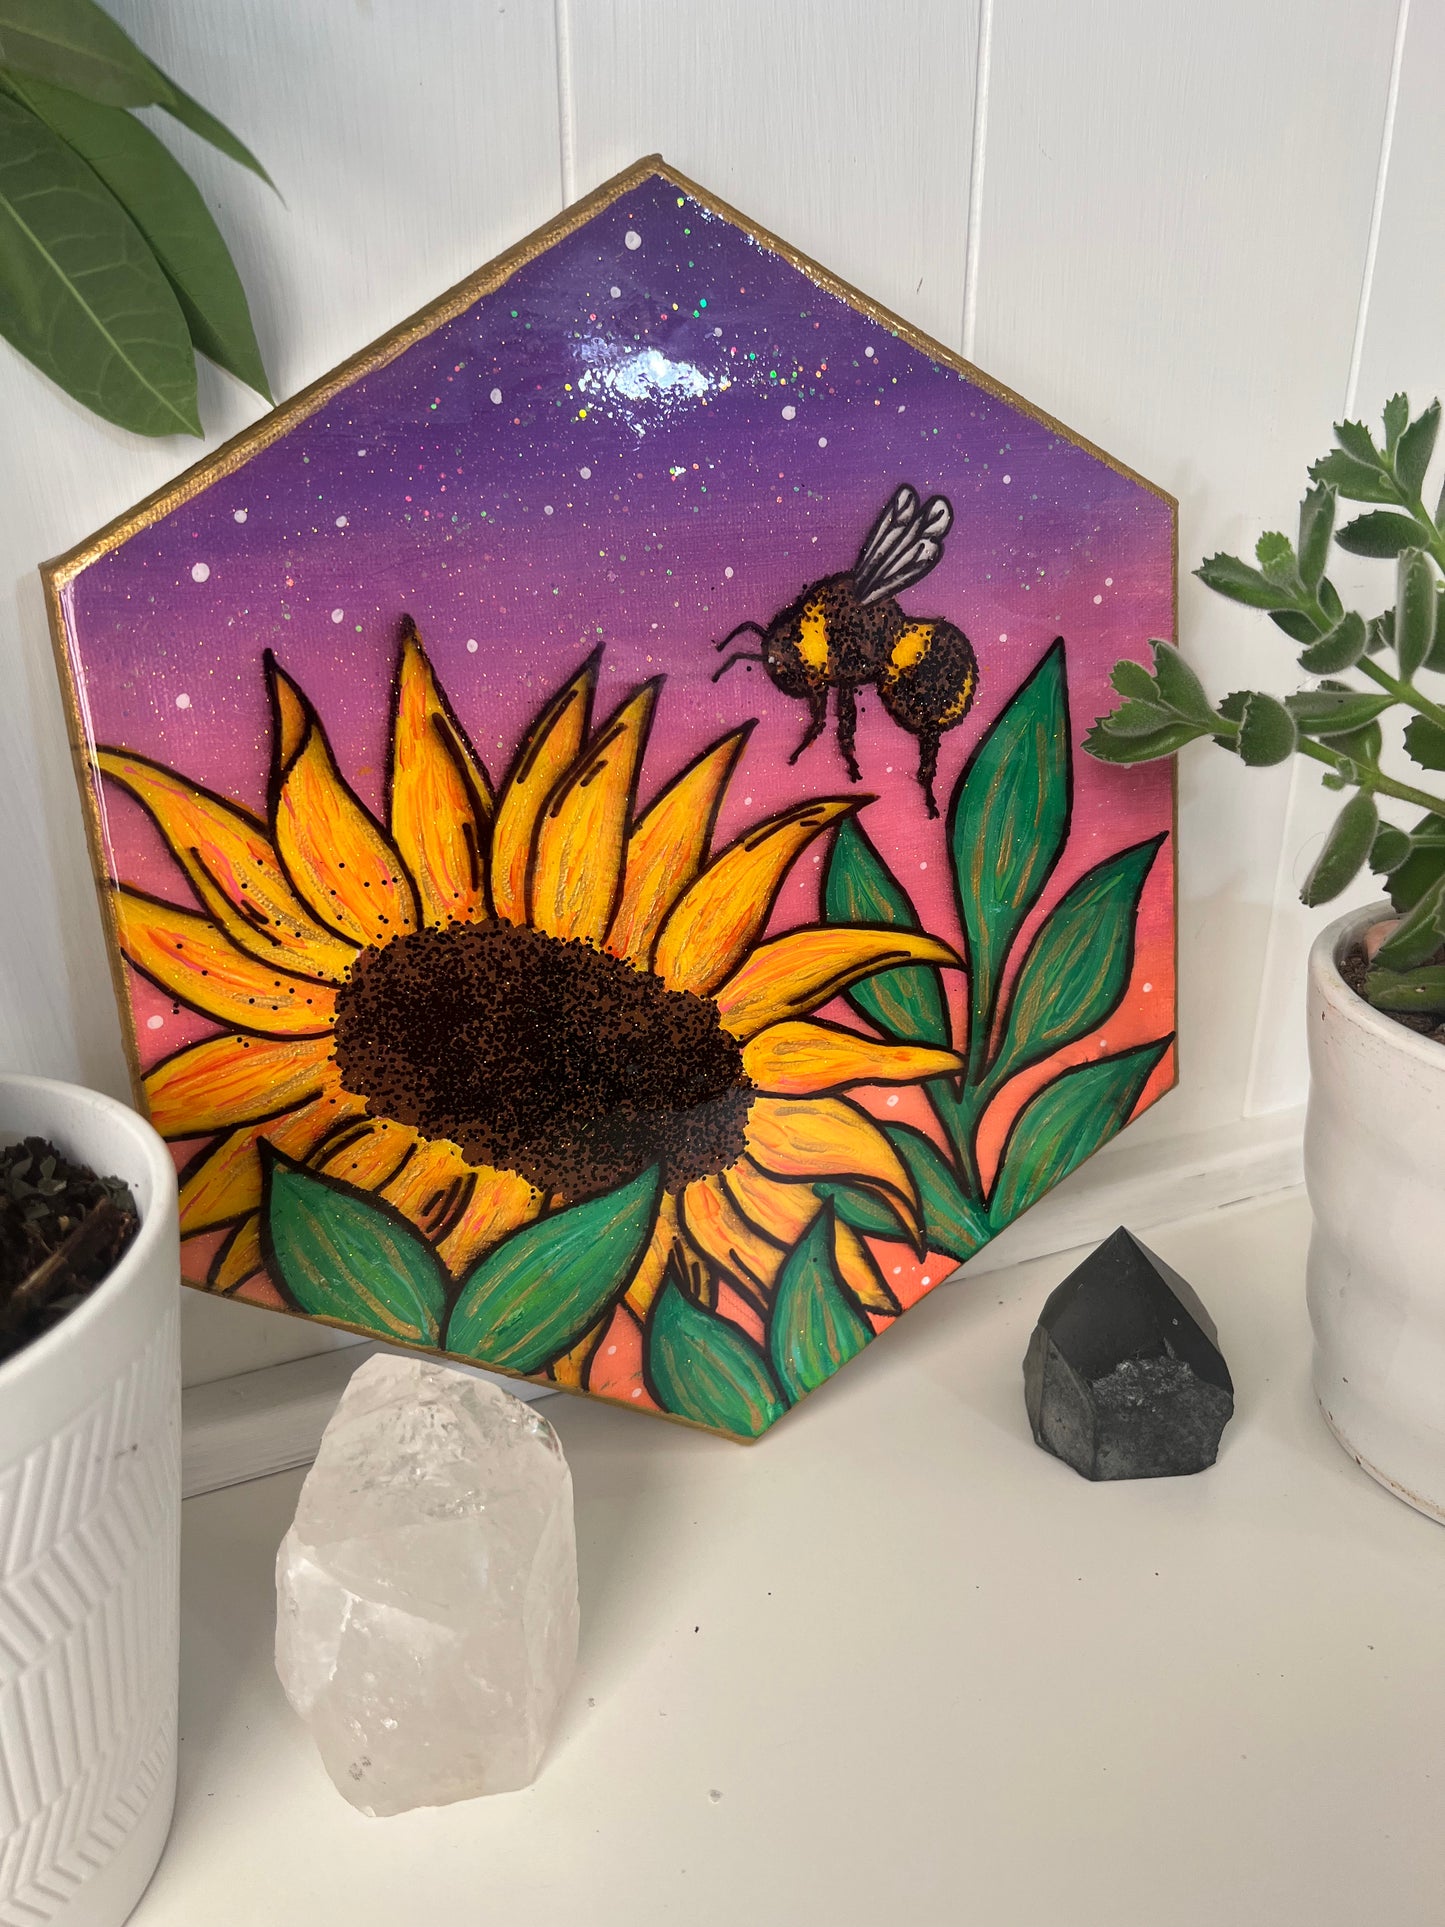 Evening Sunflower Original Painting